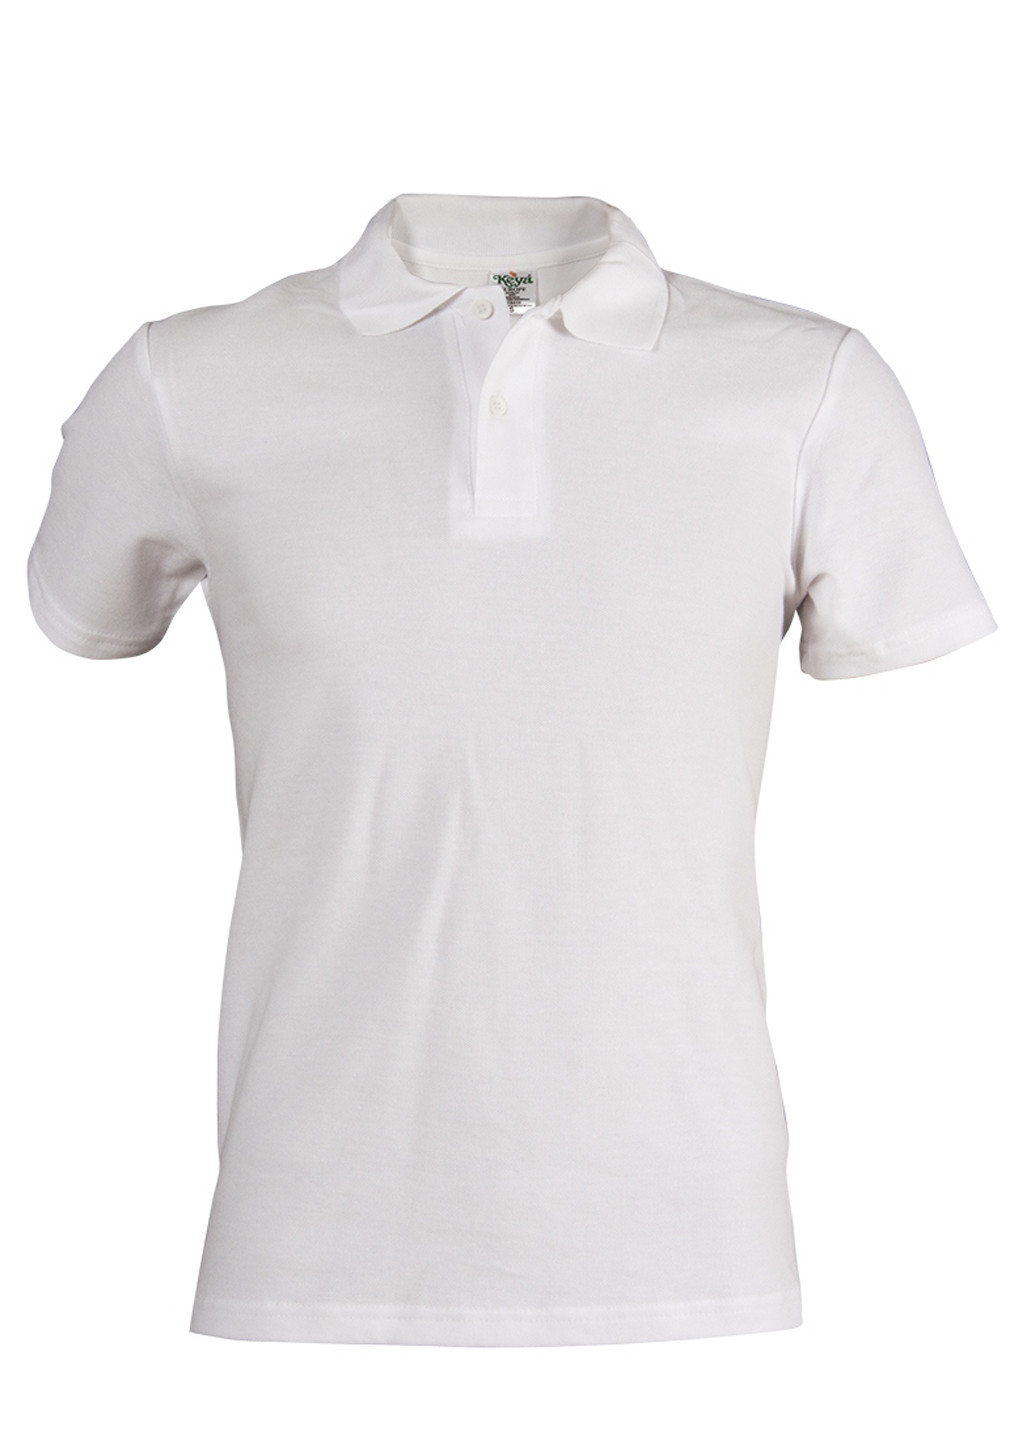 Белая футболка-поло для мужчин Keya однотонная